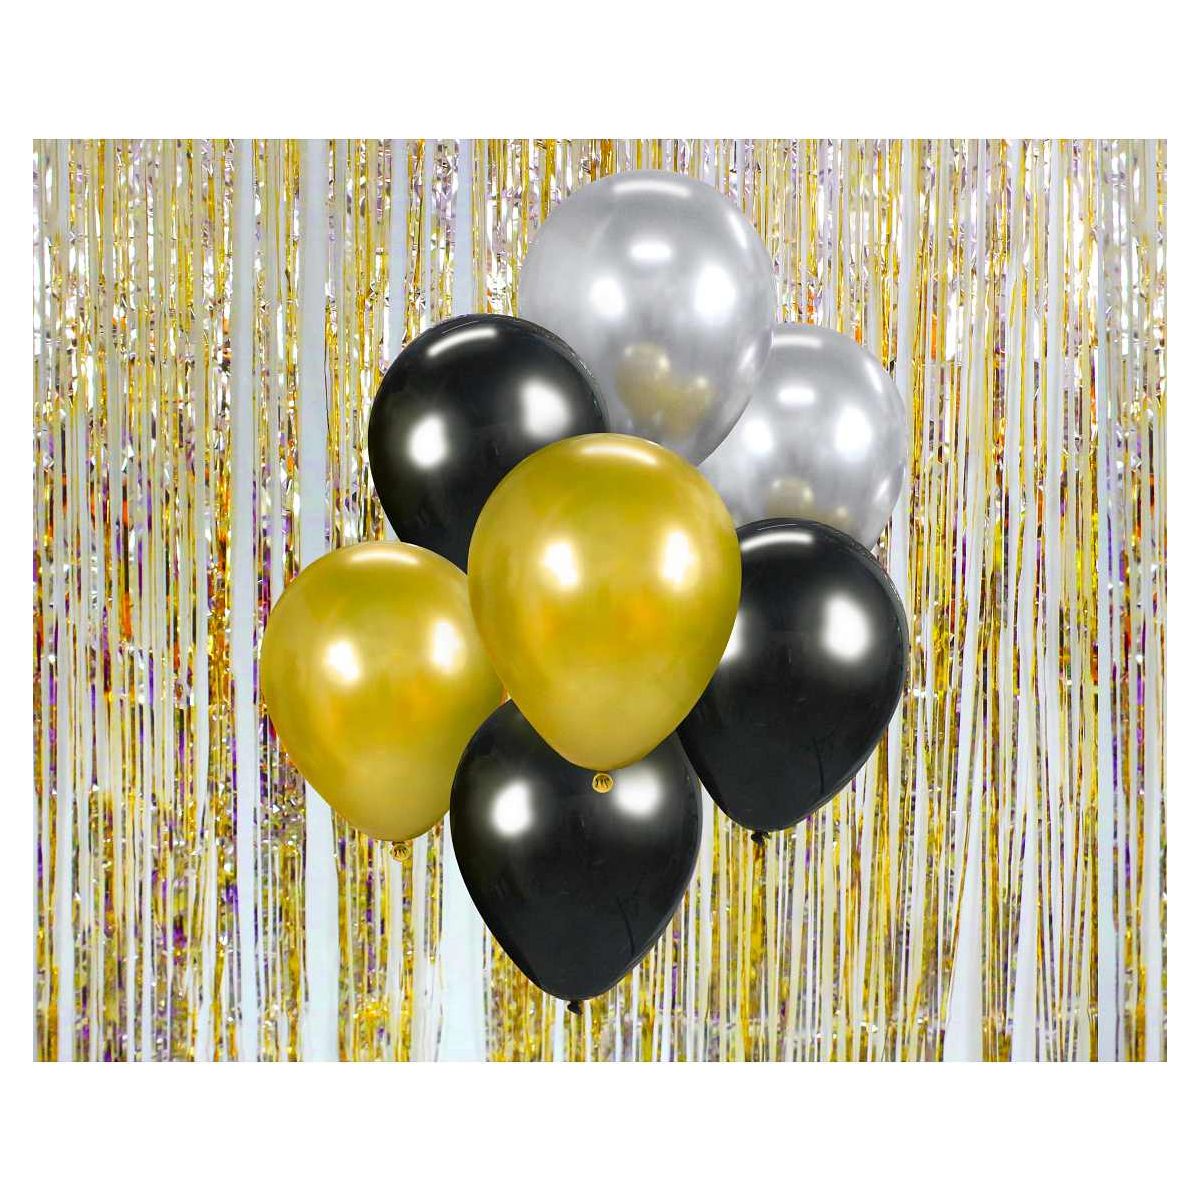 Balon gumowy Godan Bukiet balonowy złoto-srebrno-czarny, 7 szt. miedziana 300mm 12cal (BB-ZSC7)